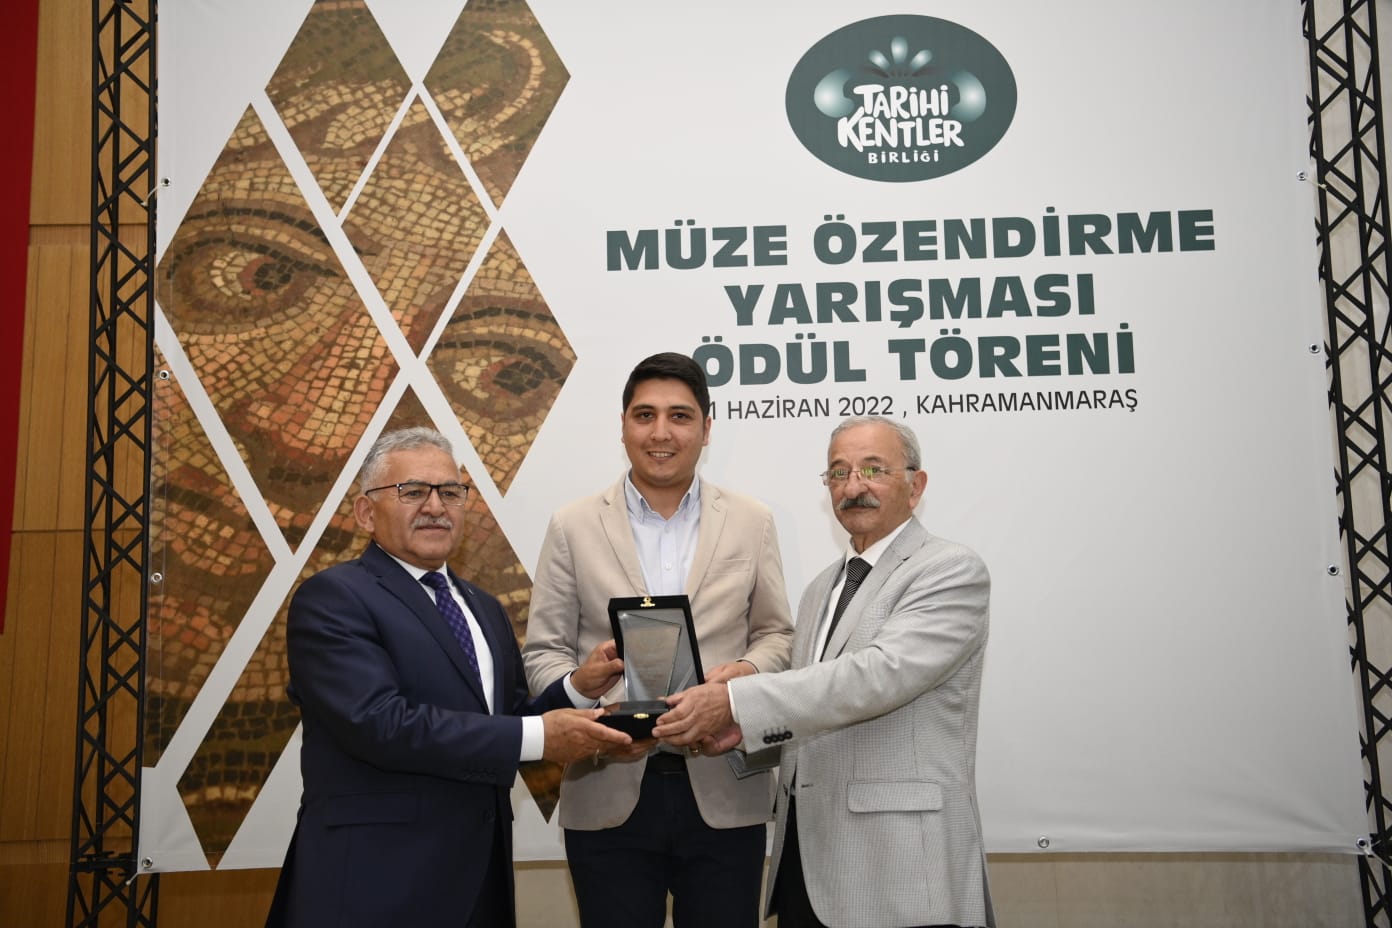 Kadıköy Belediyesi’ne Tarihi Kentler Birliği ödülü